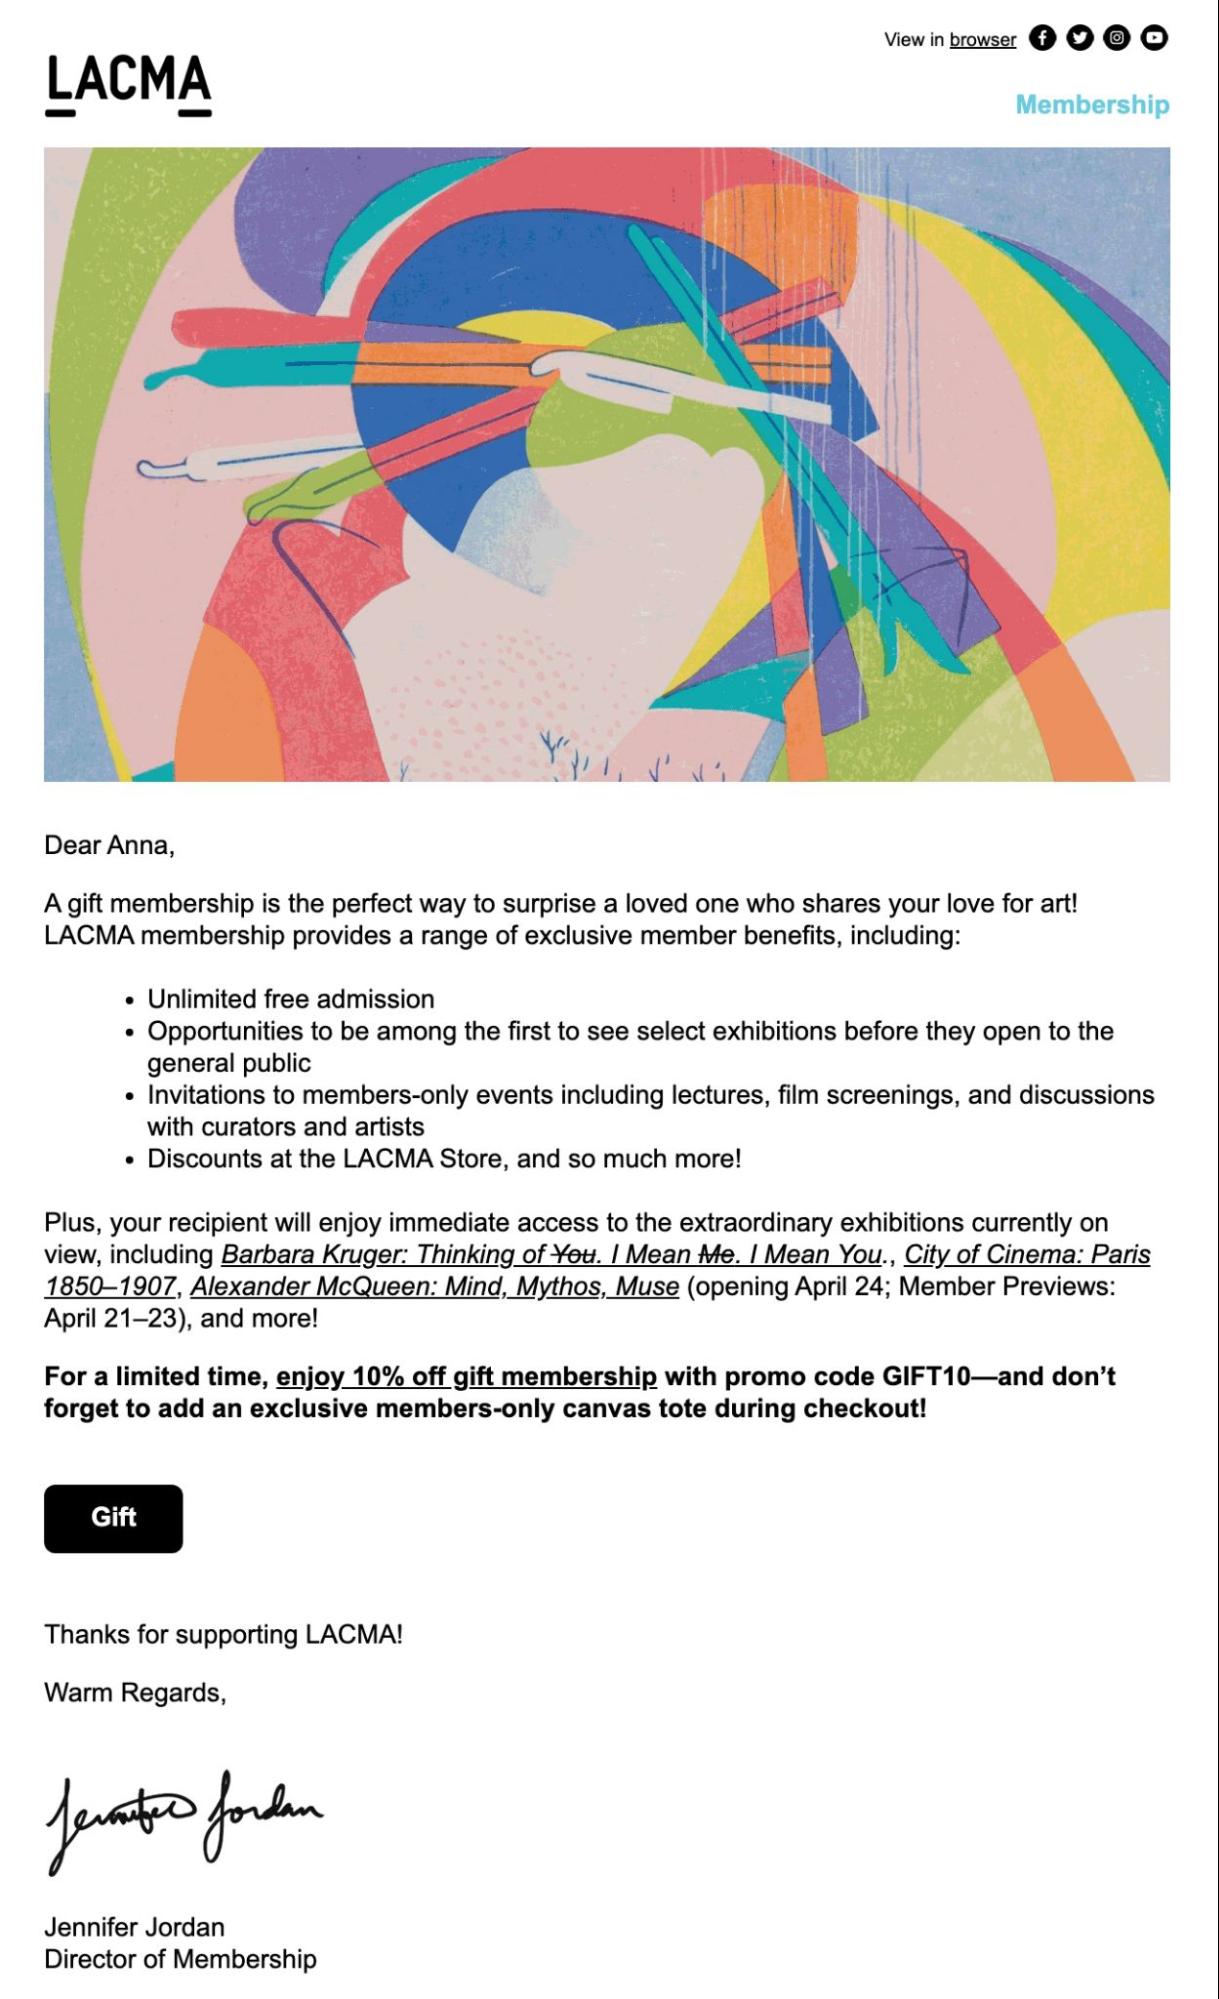 Exemplo de e-mail promocional do LACMA